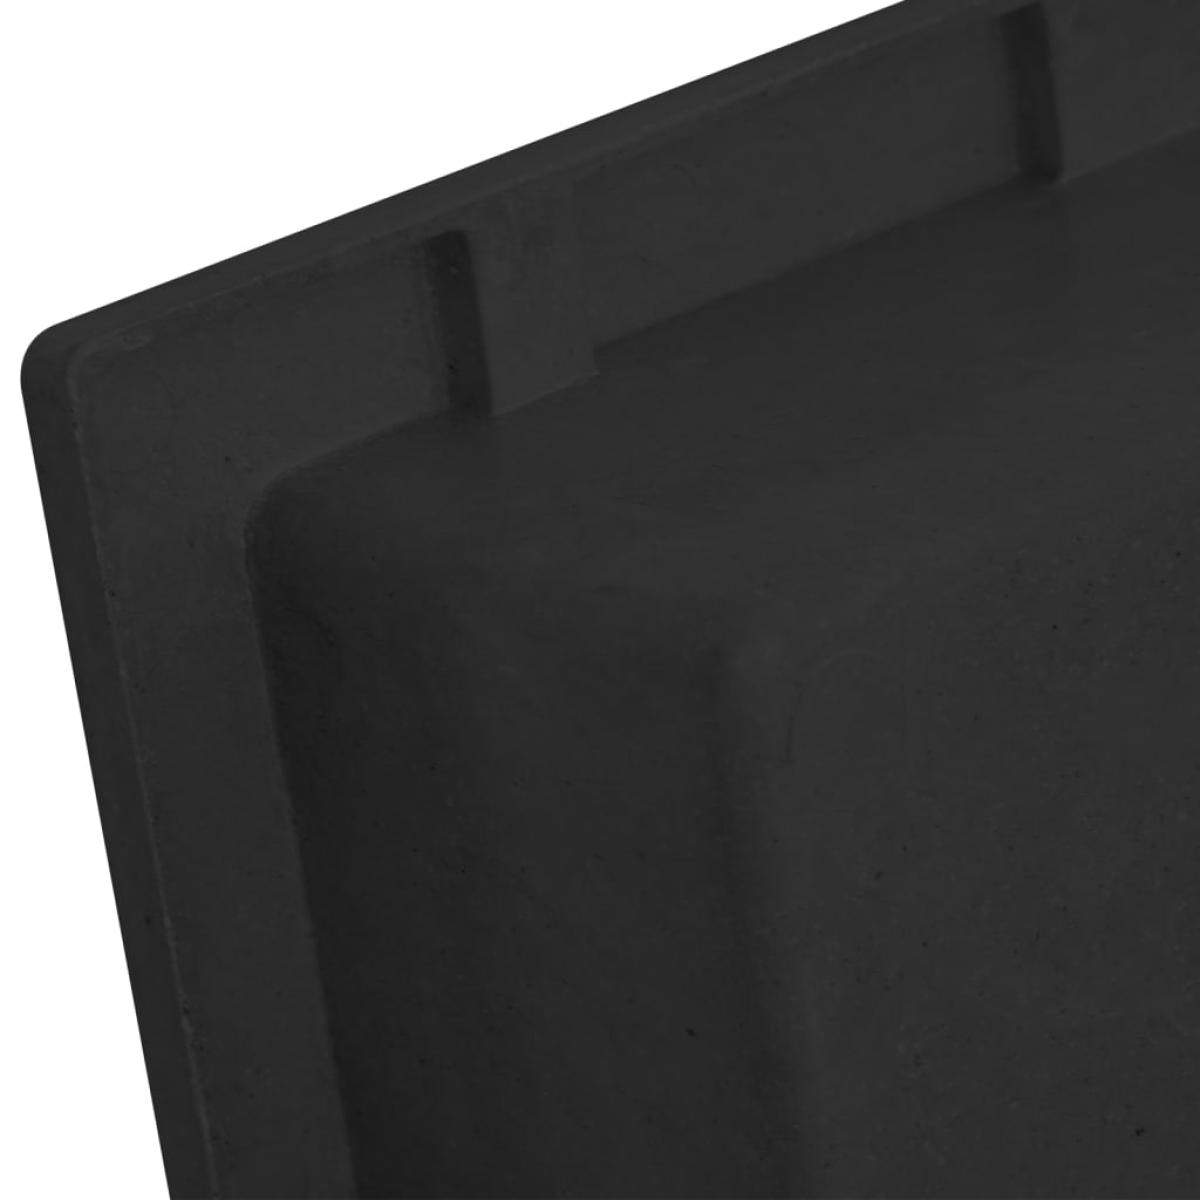 Hornacina de ducha negro 41x51x10 cm